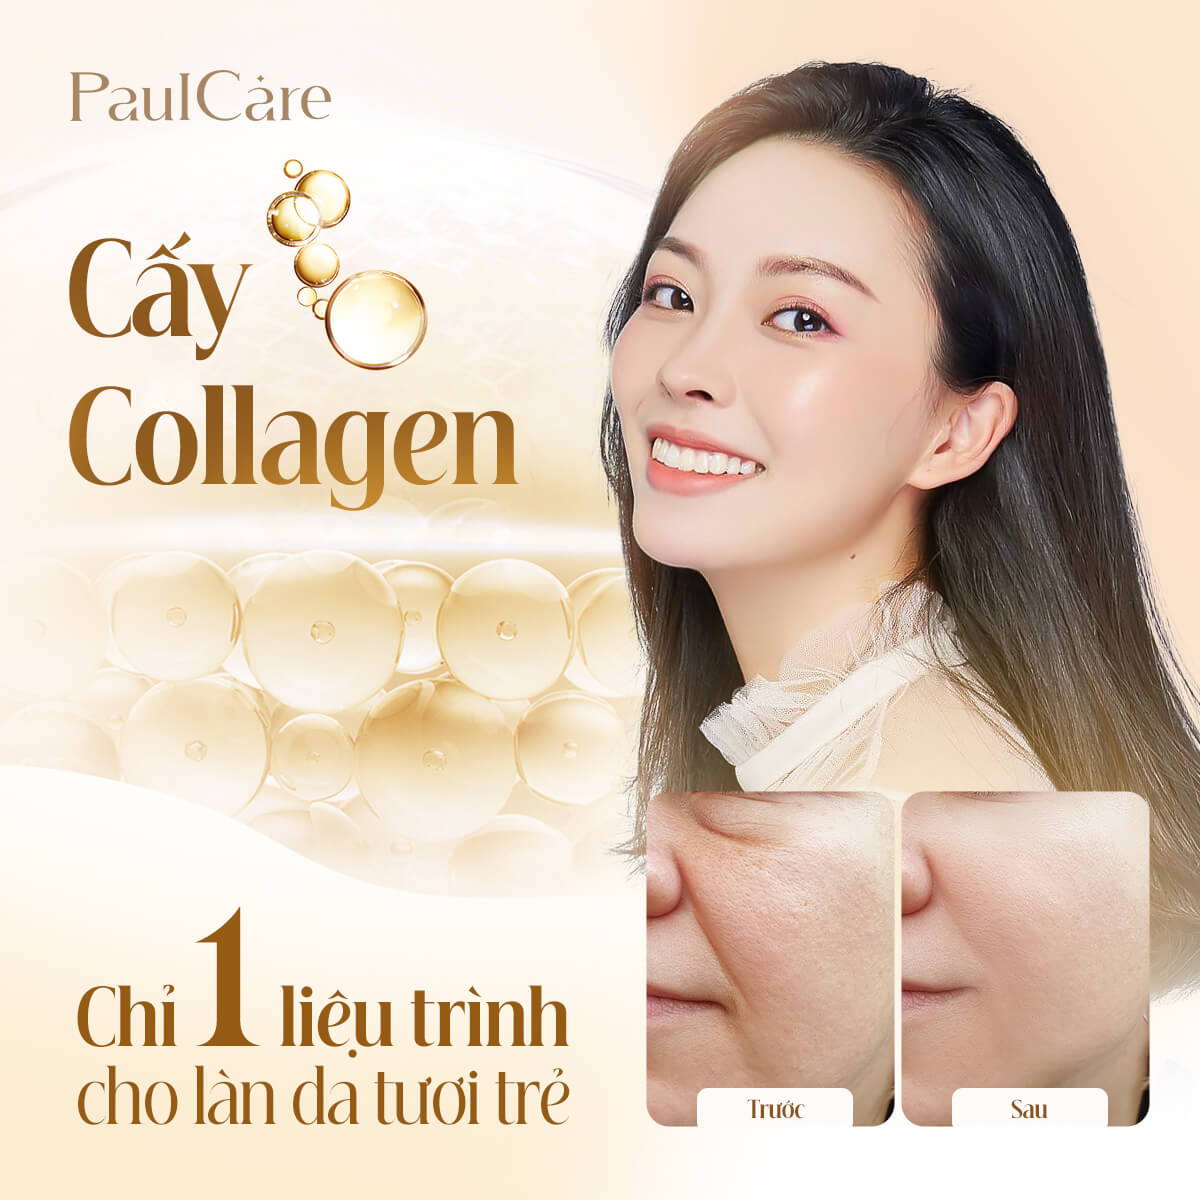 Cay_collagen_tuoi_tham_my_vien_paulcare